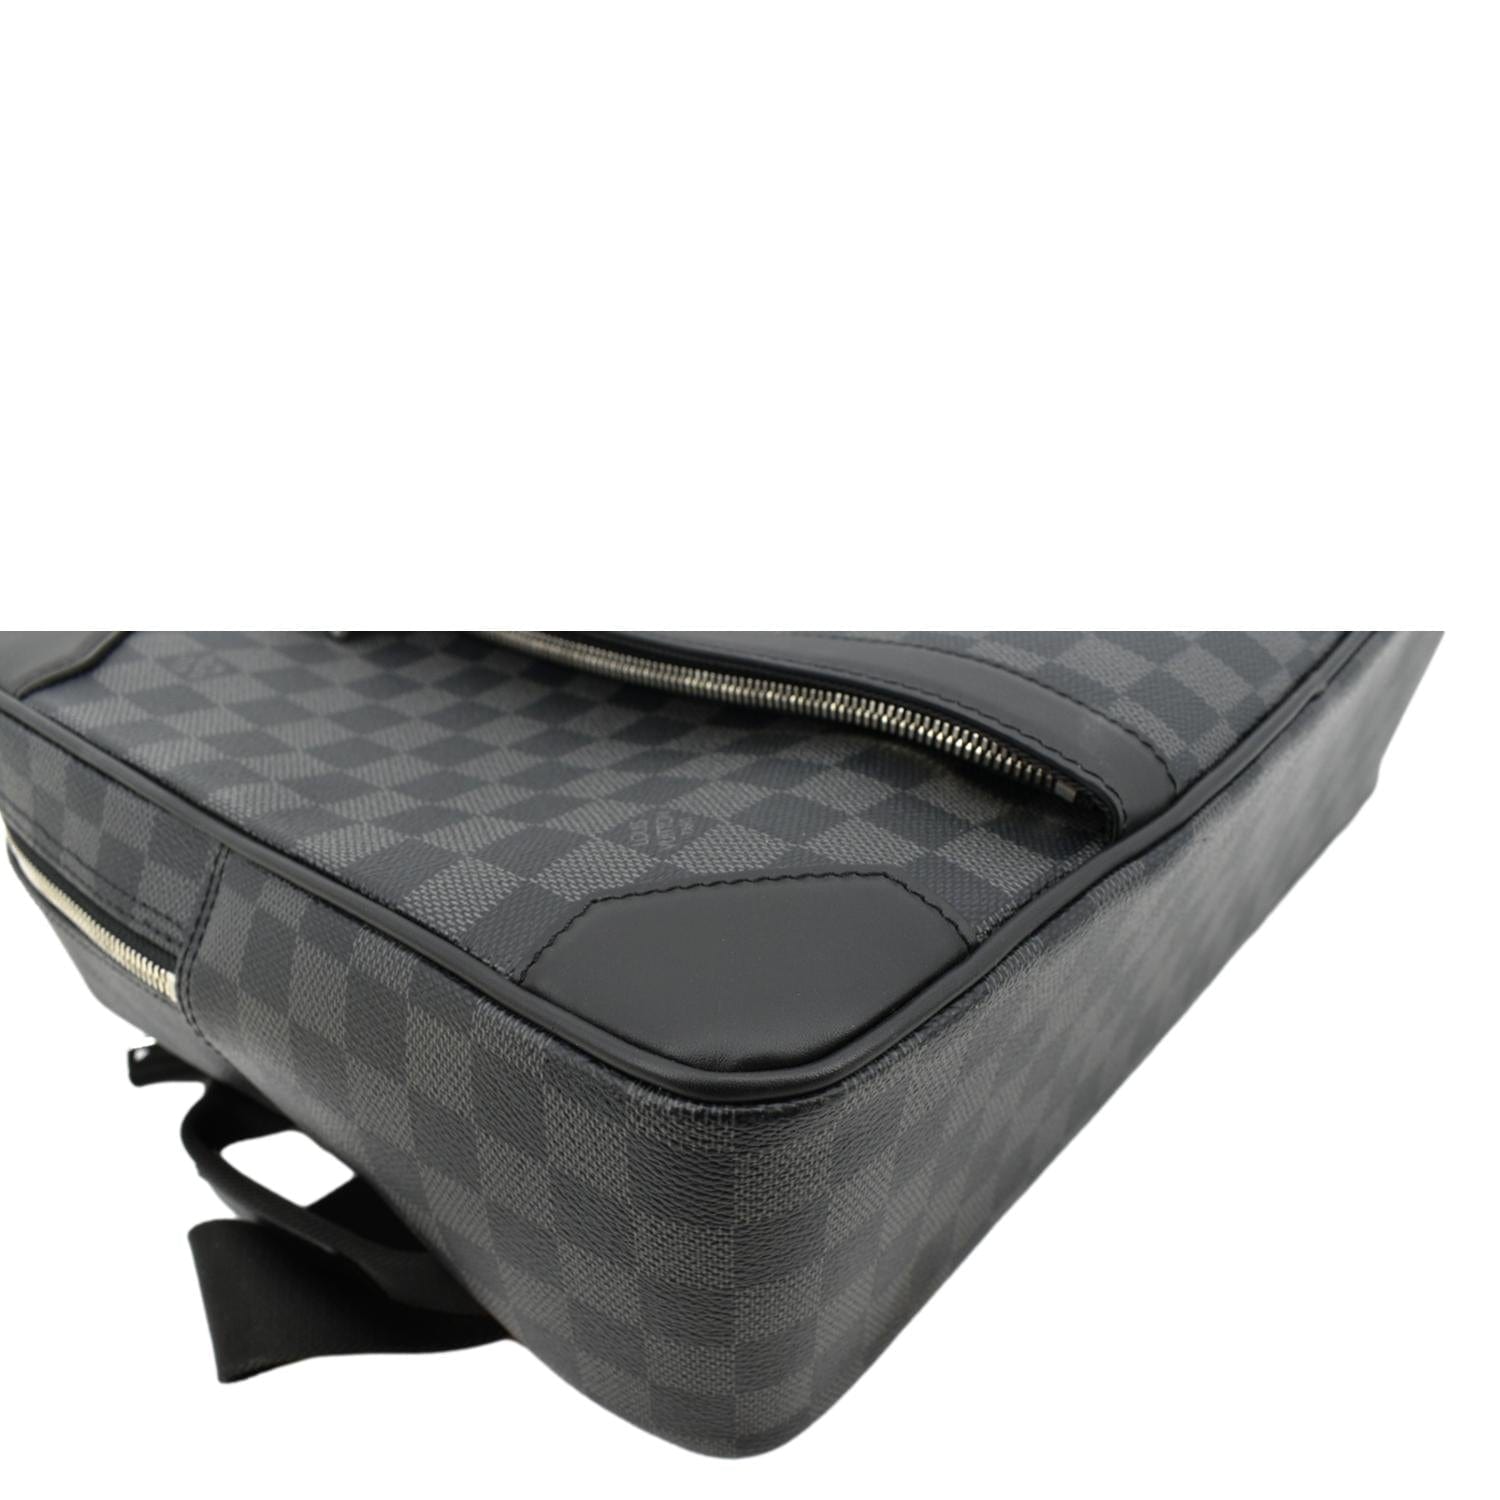 Louis Vuitton Damier Graphite Jorn Bag - Black Briefcases, Bags